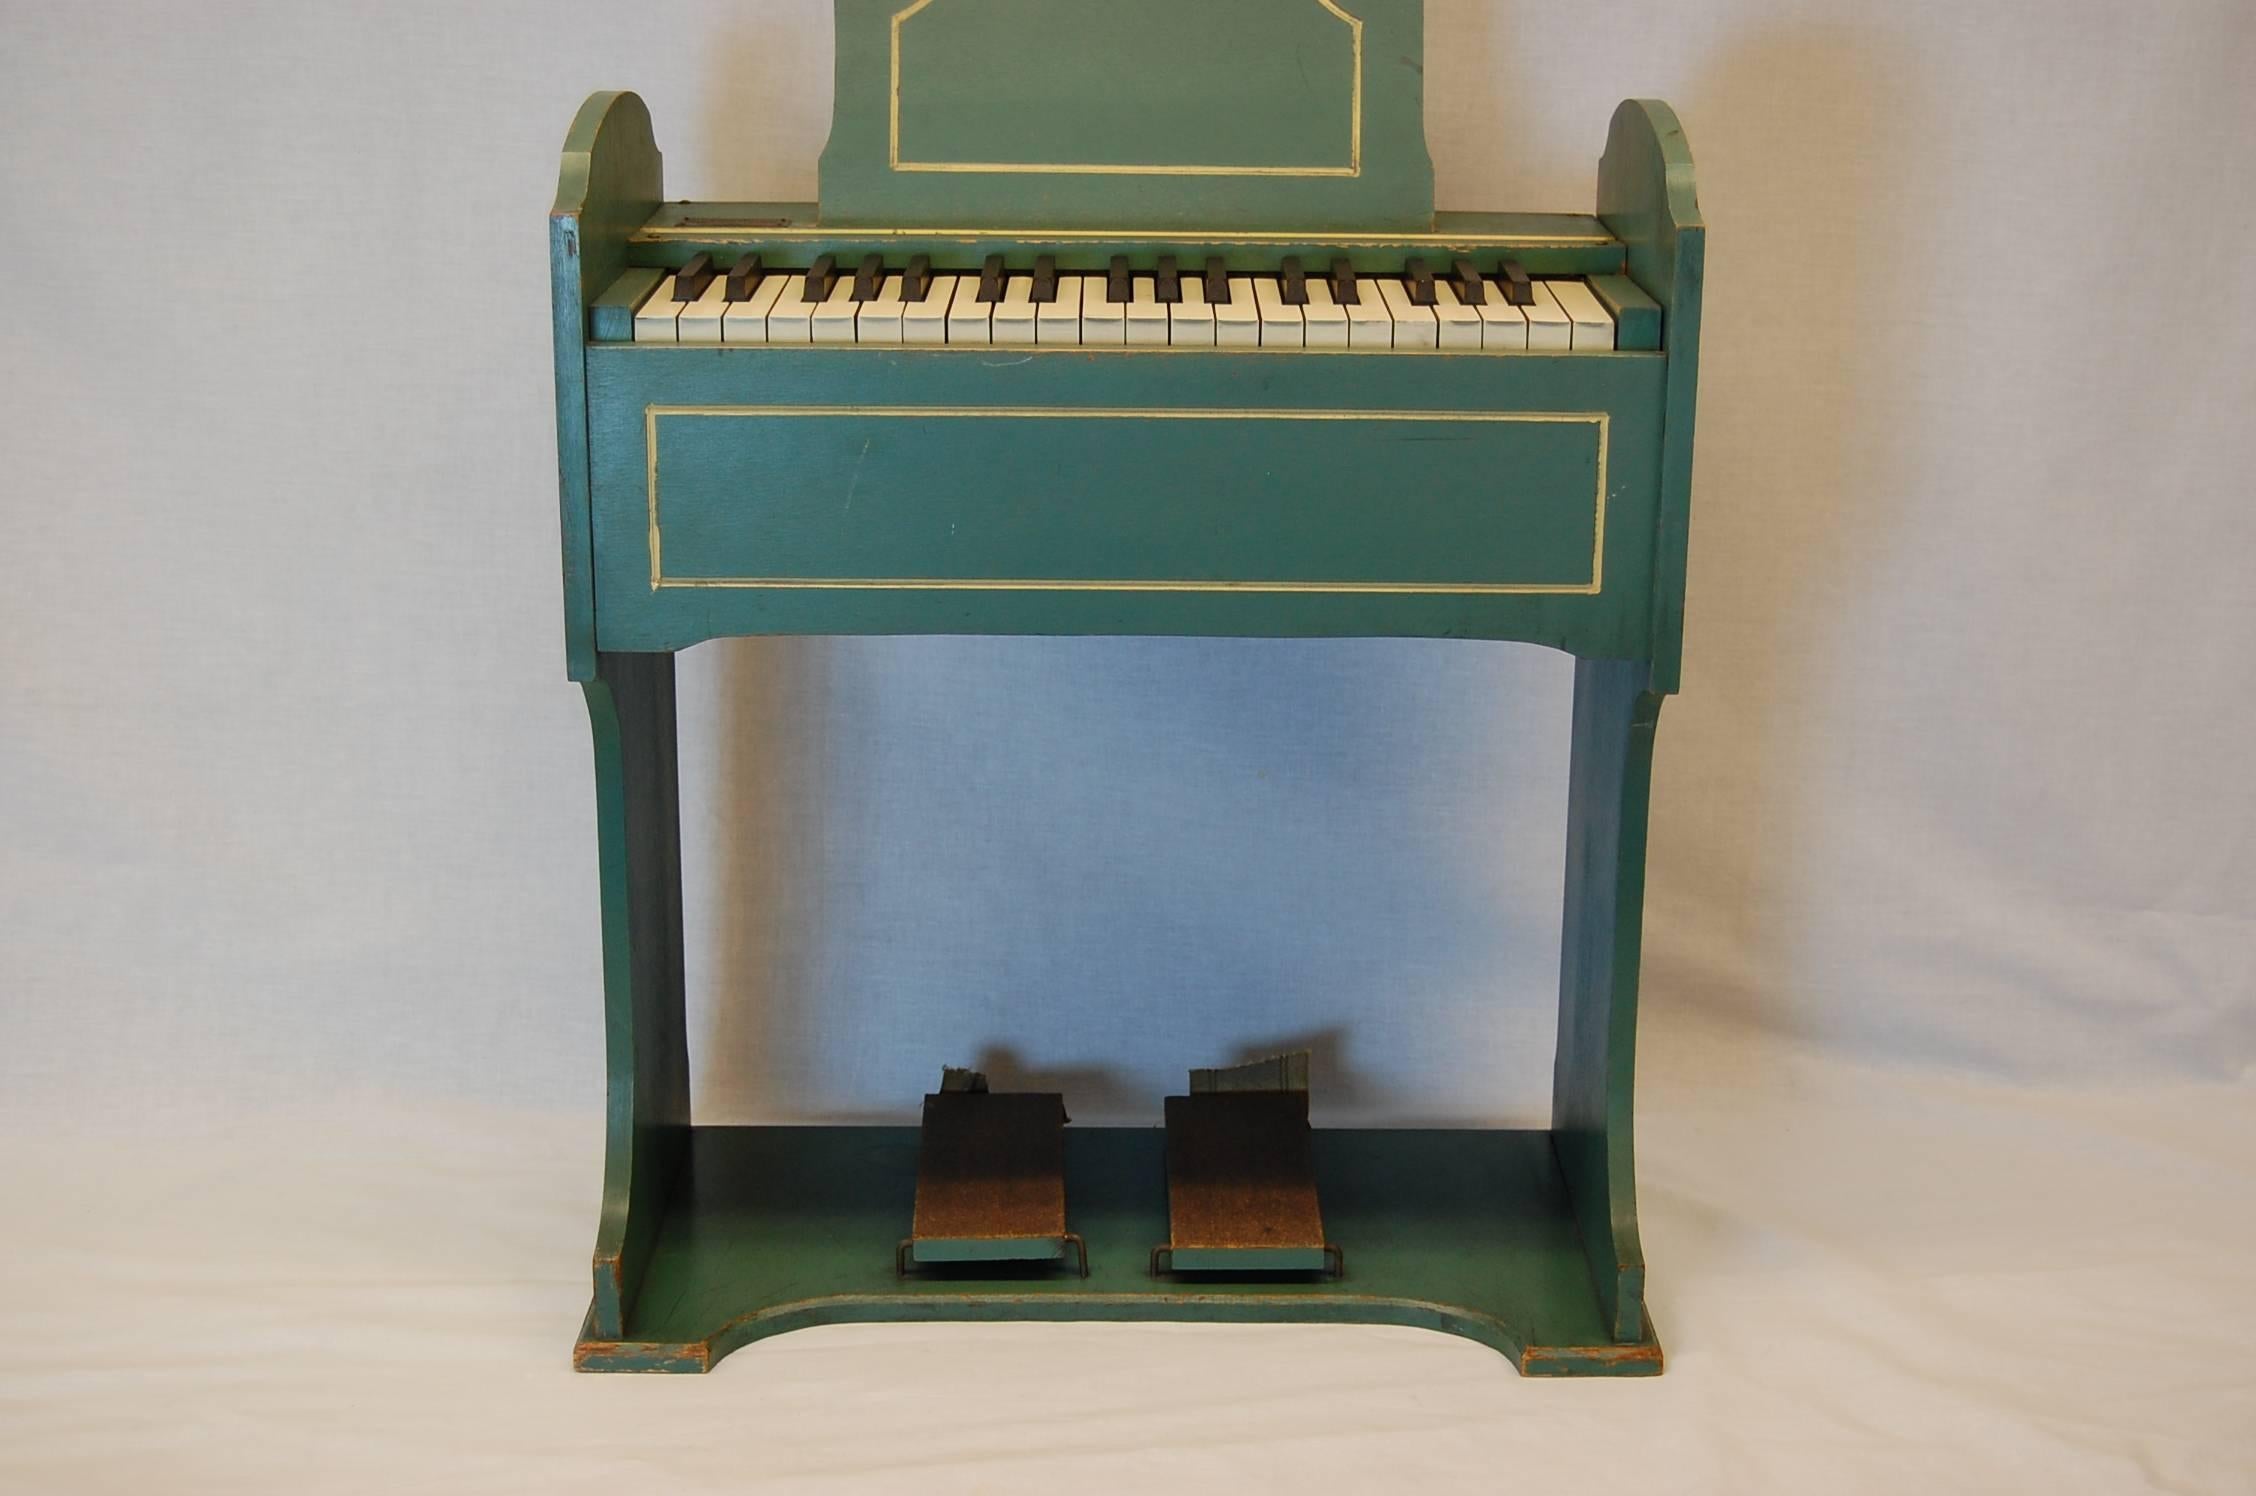 Folk Art Childs Pump Organ circa 1940 by the Estey Organ Corporation